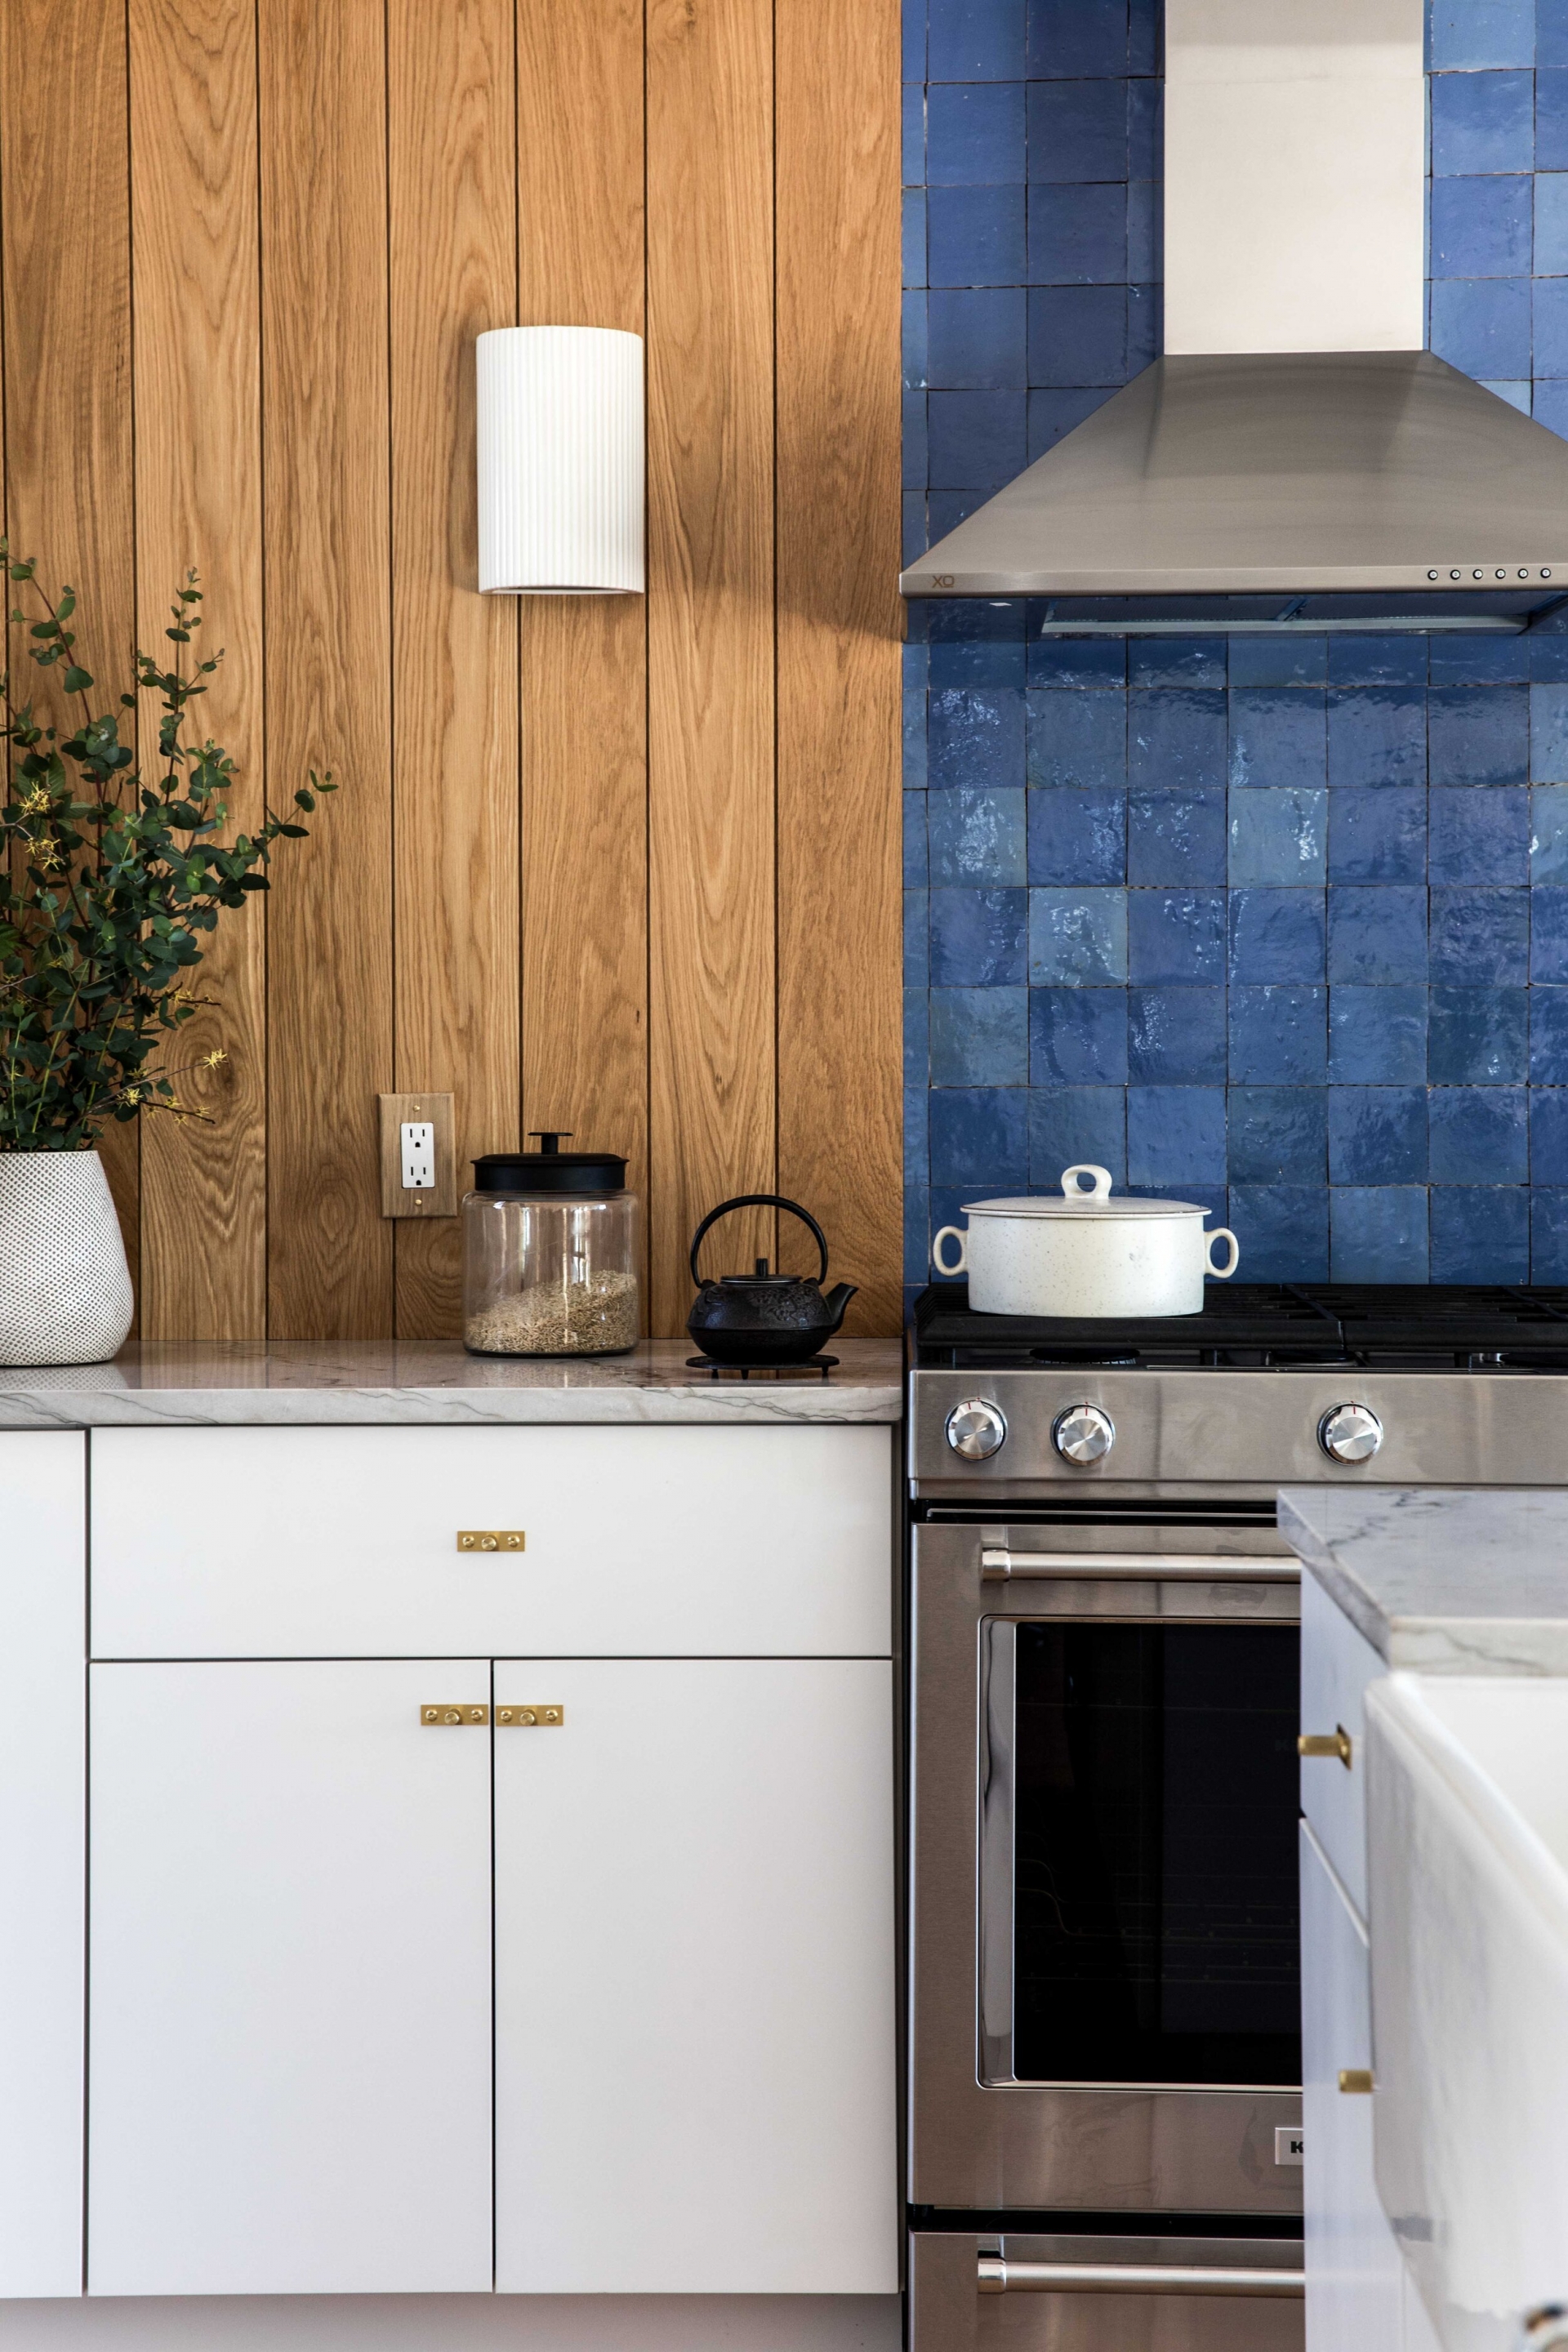 Bạn mong muốn sức hút mãnh liệt từ cái nhìn đầu tiên? Phòng bếp này có mang lại cho bạn cảm giác ấn tượng đó không? Sự kết hợp song song giữa tường ốp gỗ và ốp gạch màu xanh coban vừa ấm áp vừa sắc sảo, là sự bổ sung hoàn hảo cho nhau.